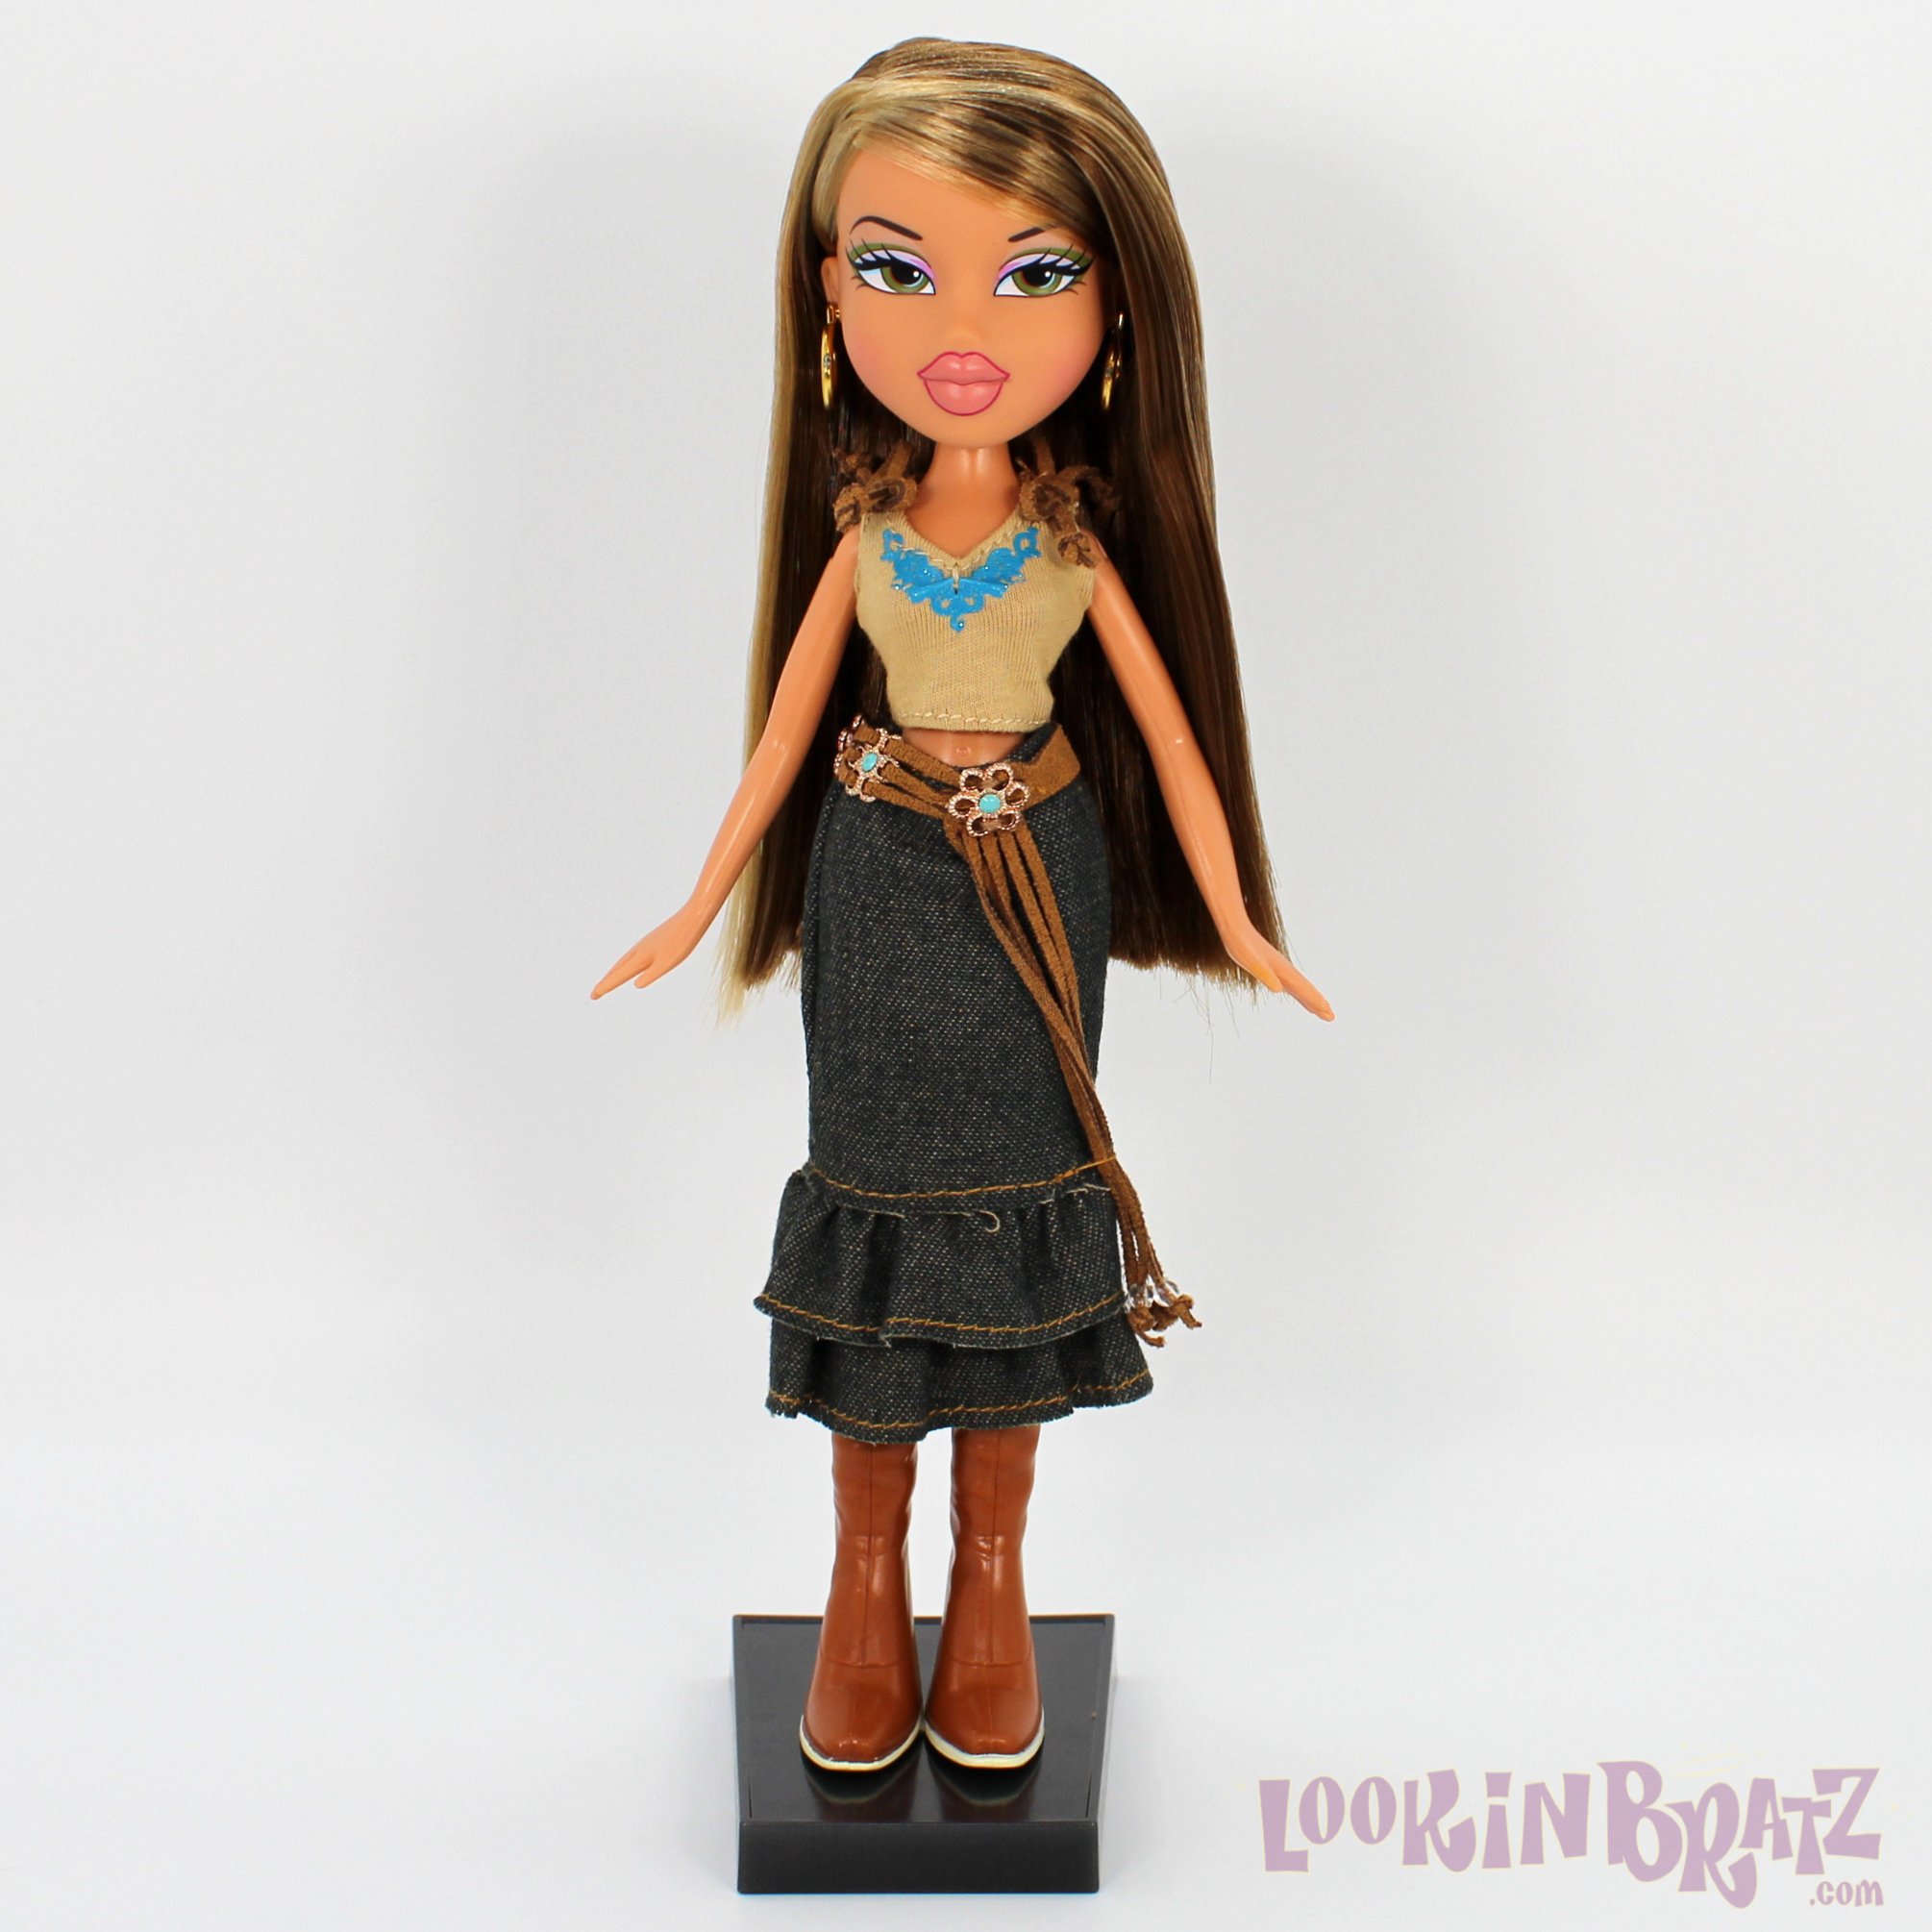 Bratz Fianna!, I am very excited for the new Fianna doll! I…